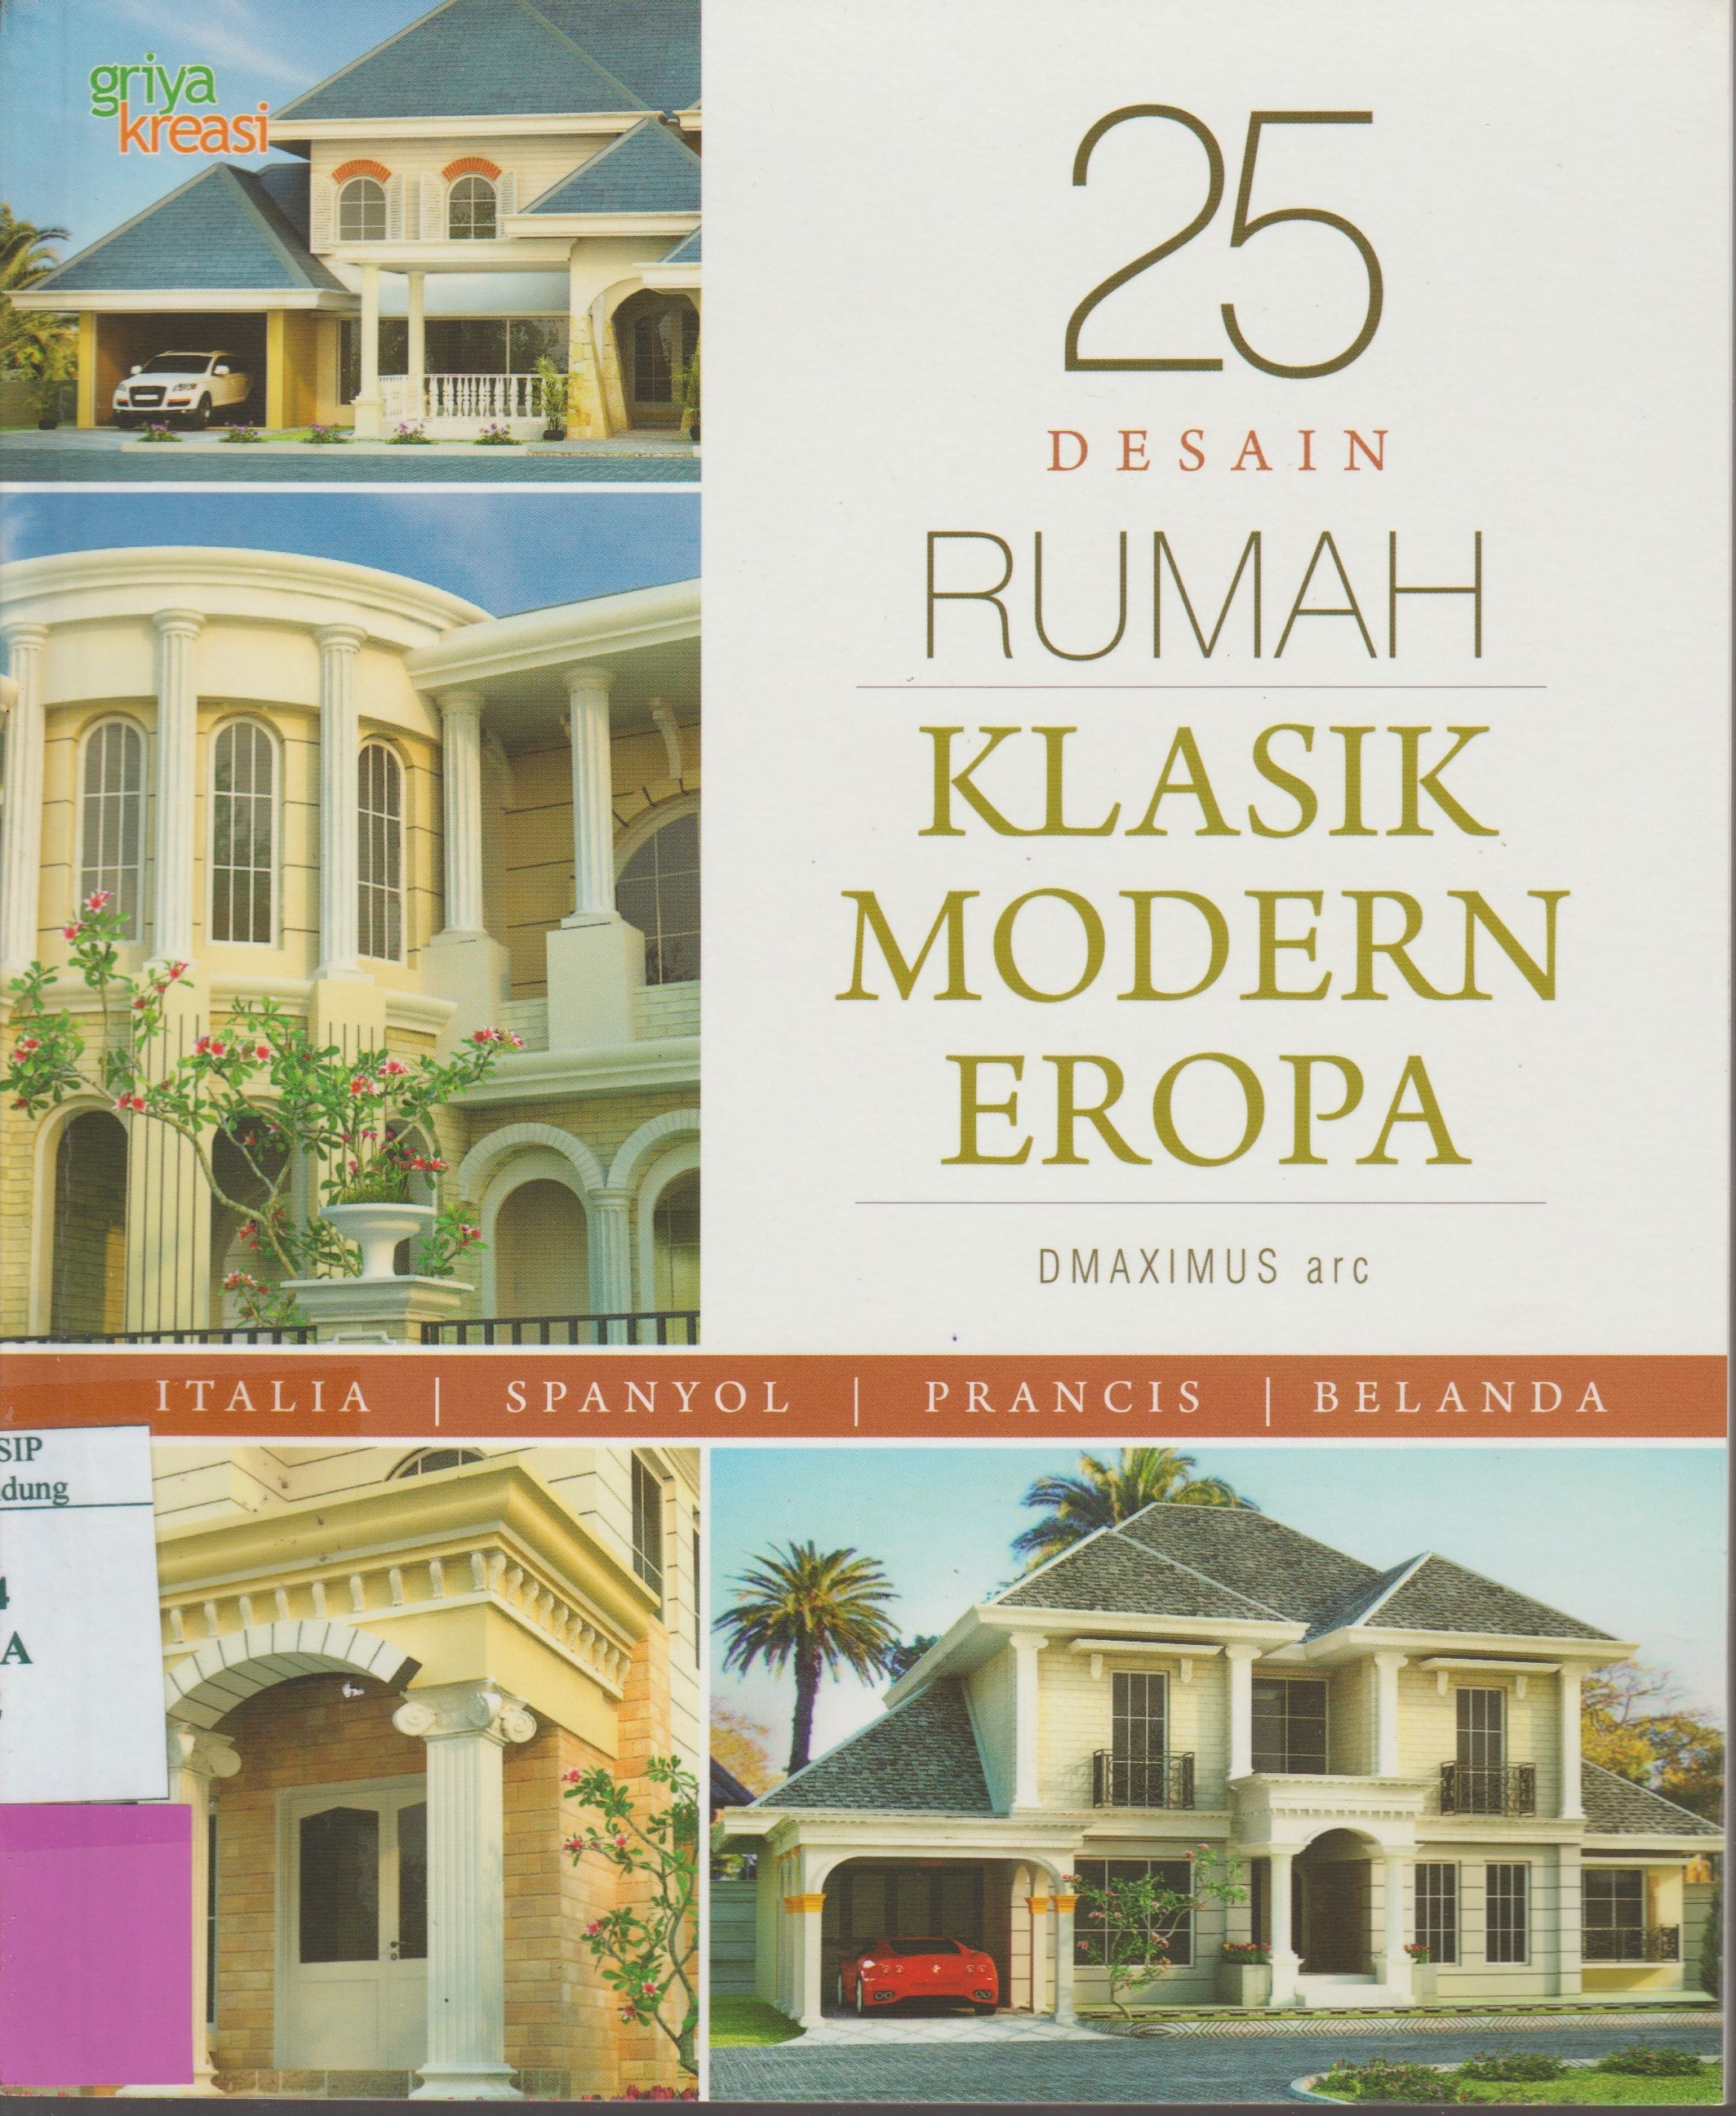 36 Kumpulan Desain Rumah Klasik Eropa Di Bandung Yang Wajib Kamu Ketahui Deagam Design